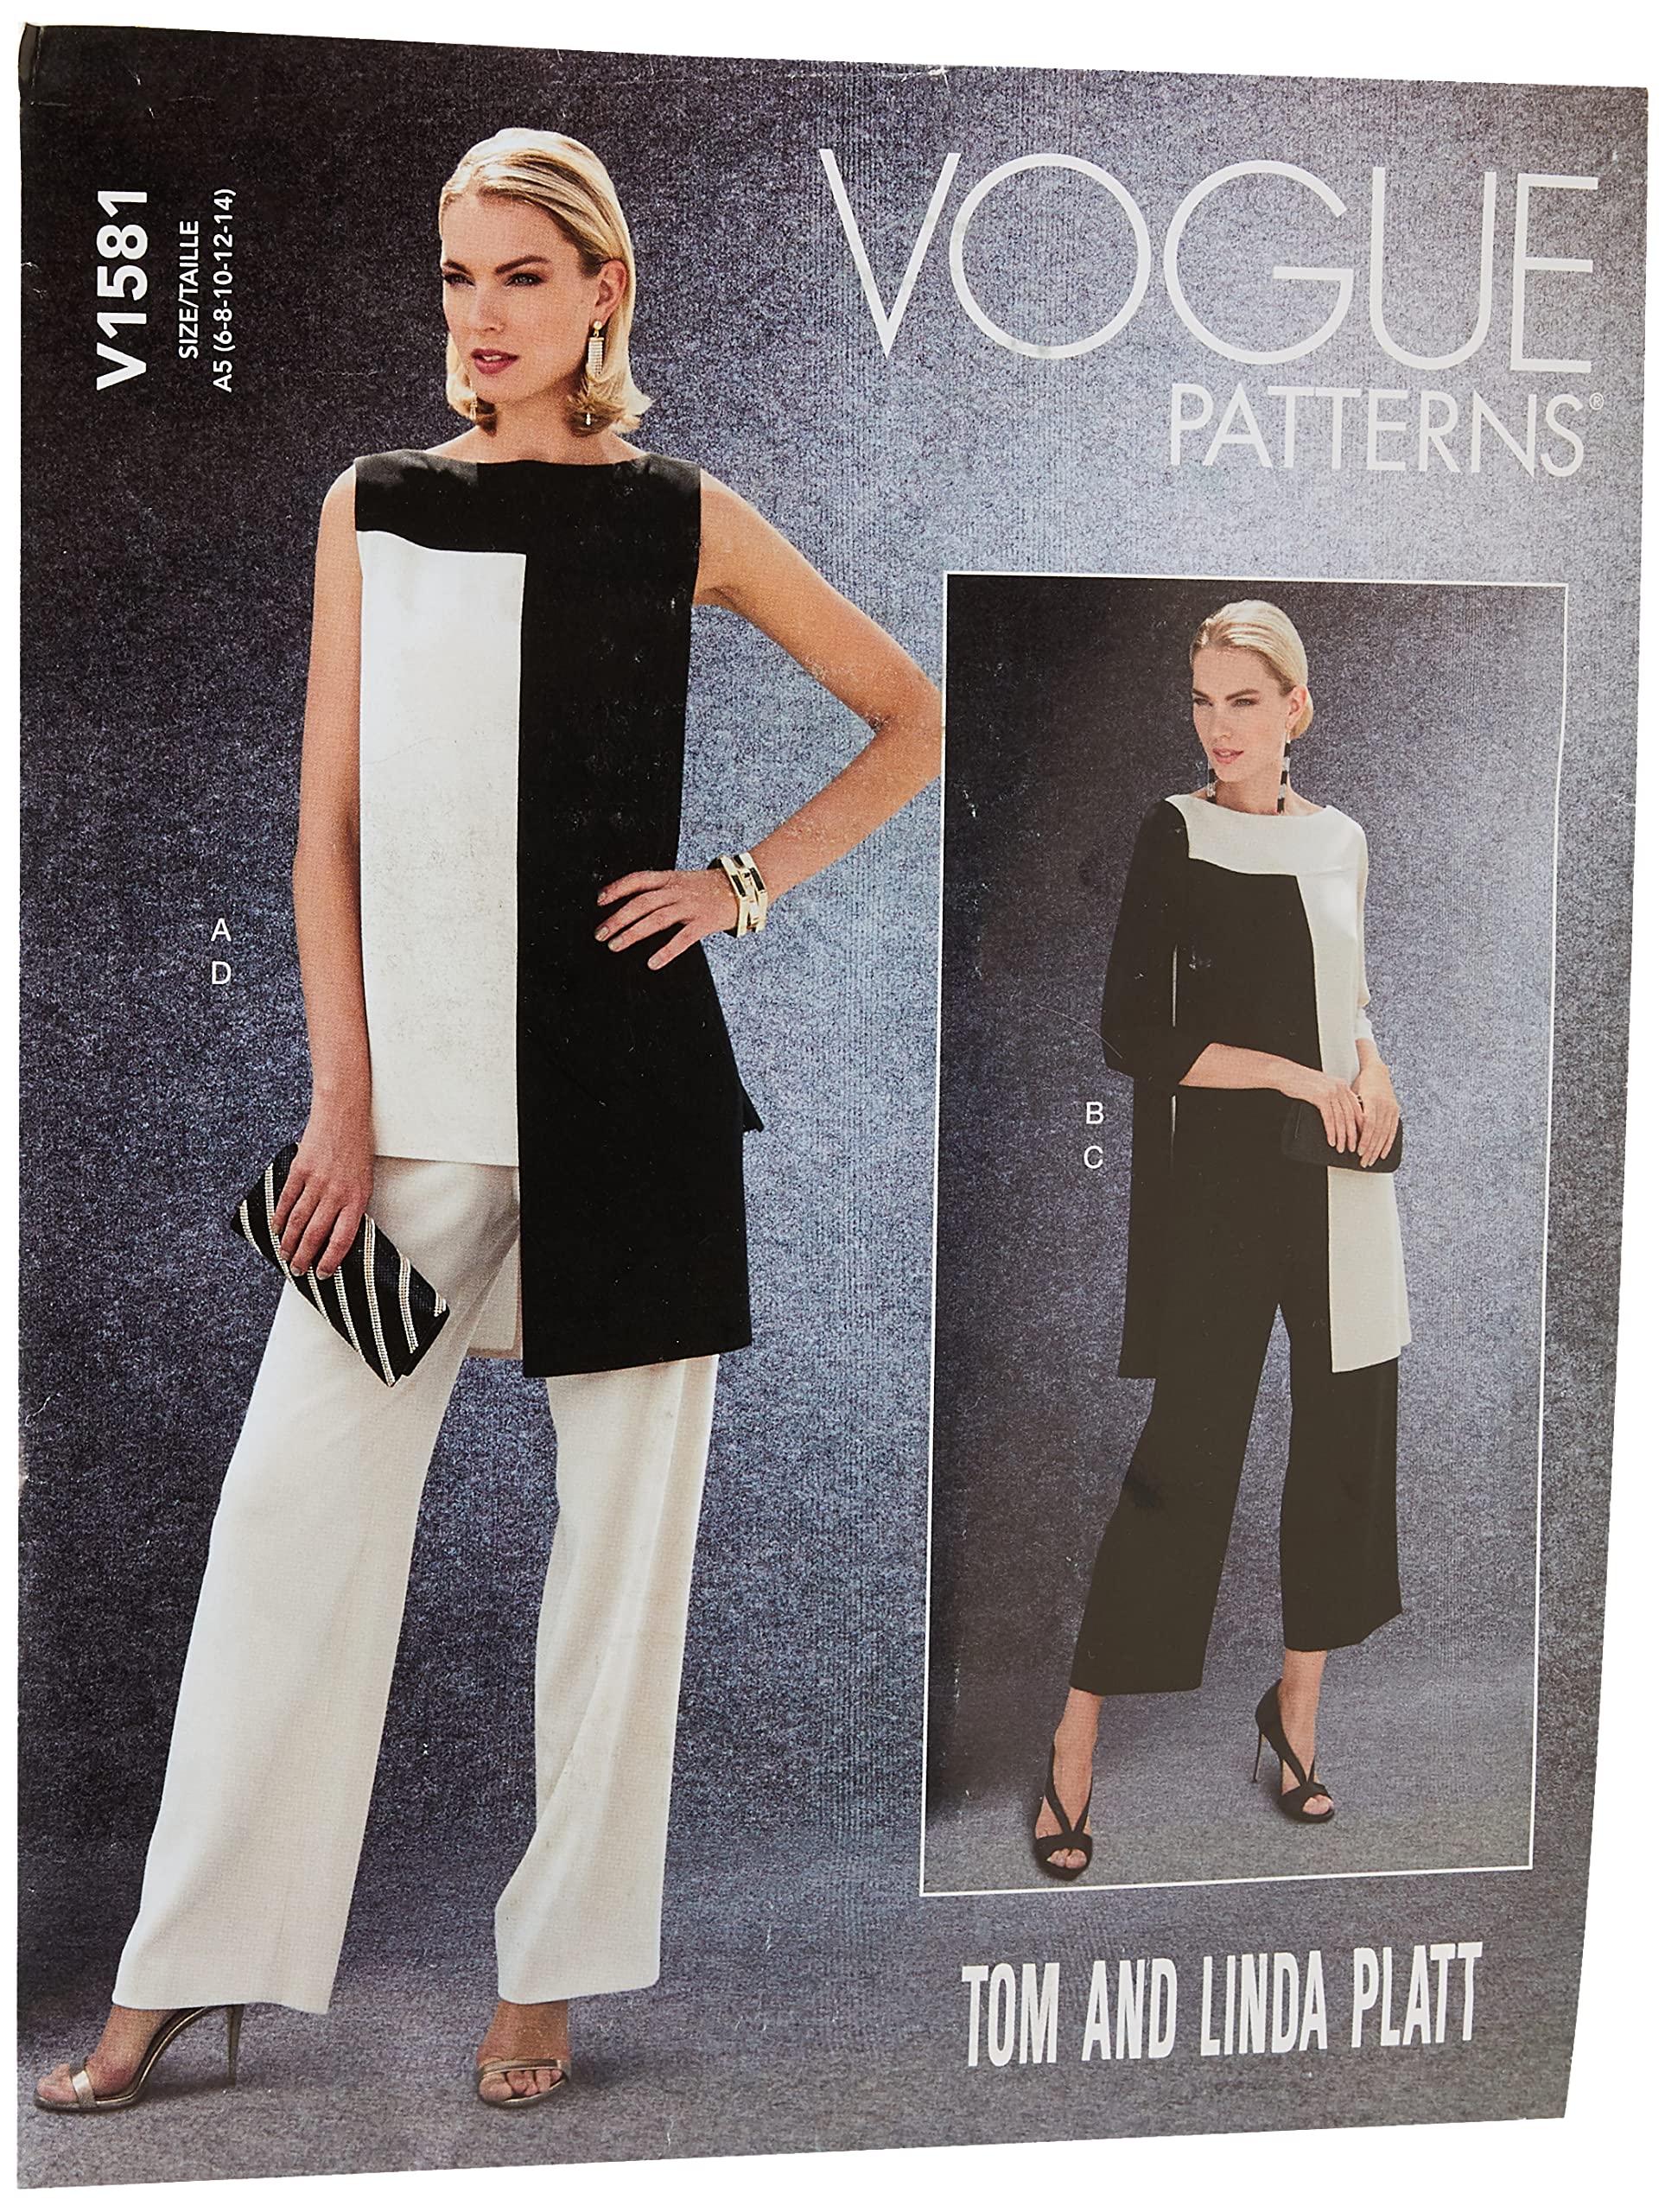 Vogue Patterns 1581A5 Vogue Schnittmuster 1581 A5, Tunika und Hose für Damen, Größen 34-42, Tissue, mehrfarbig, 20 x 0.5 x 25 cm